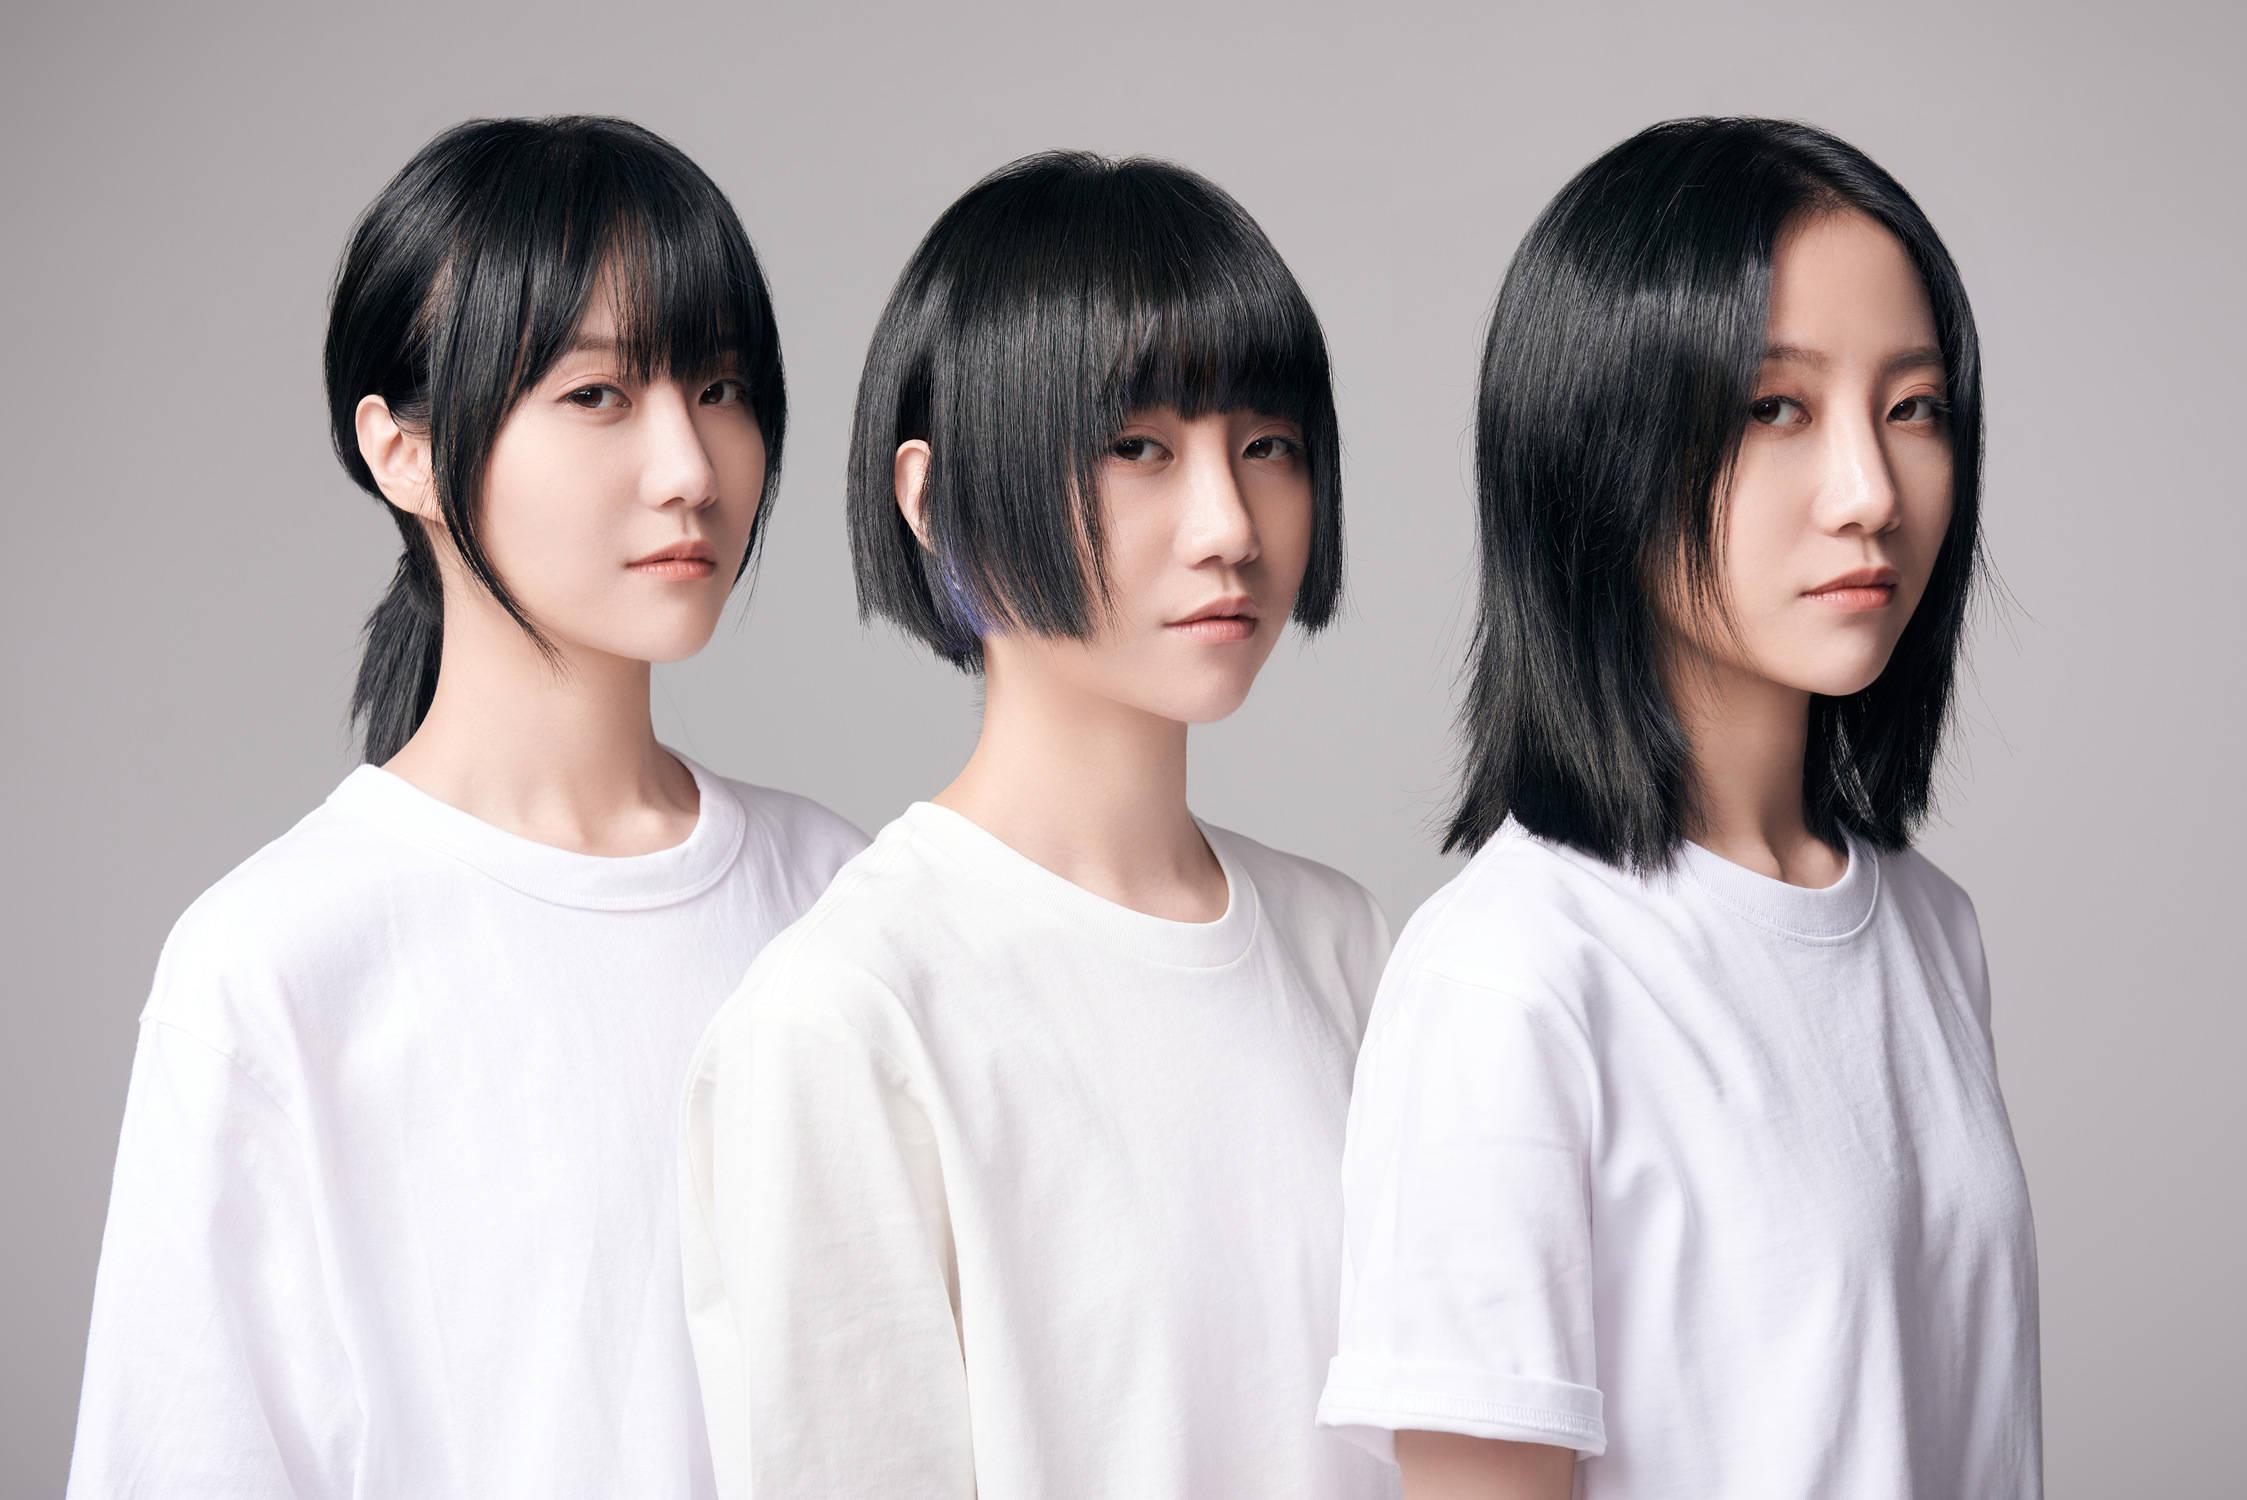 福禄寿乐队是由杜家的三胞胎姐妹组成,主唱是豆豆(杜冰儿),电子/打击